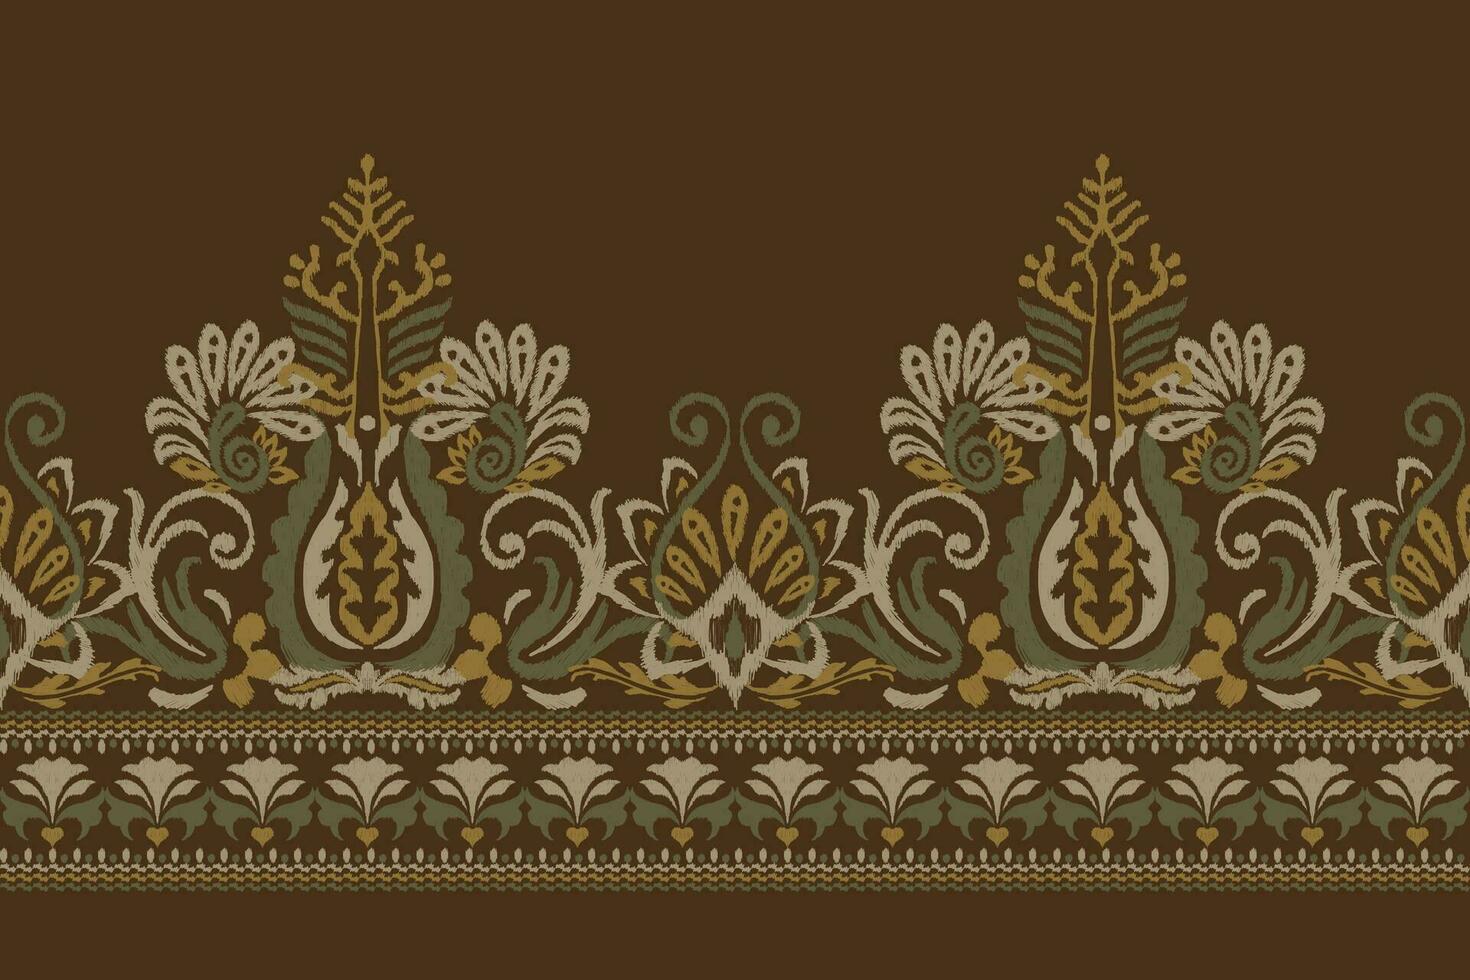 indio ikat floral cachemir bordado.ikat étnico oriental modelo tradicional.azteca estilo resumen vector ilustración.diseño para textura,tela,ropa,envoltura,decoración,pareo,bufanda,mantel individual.